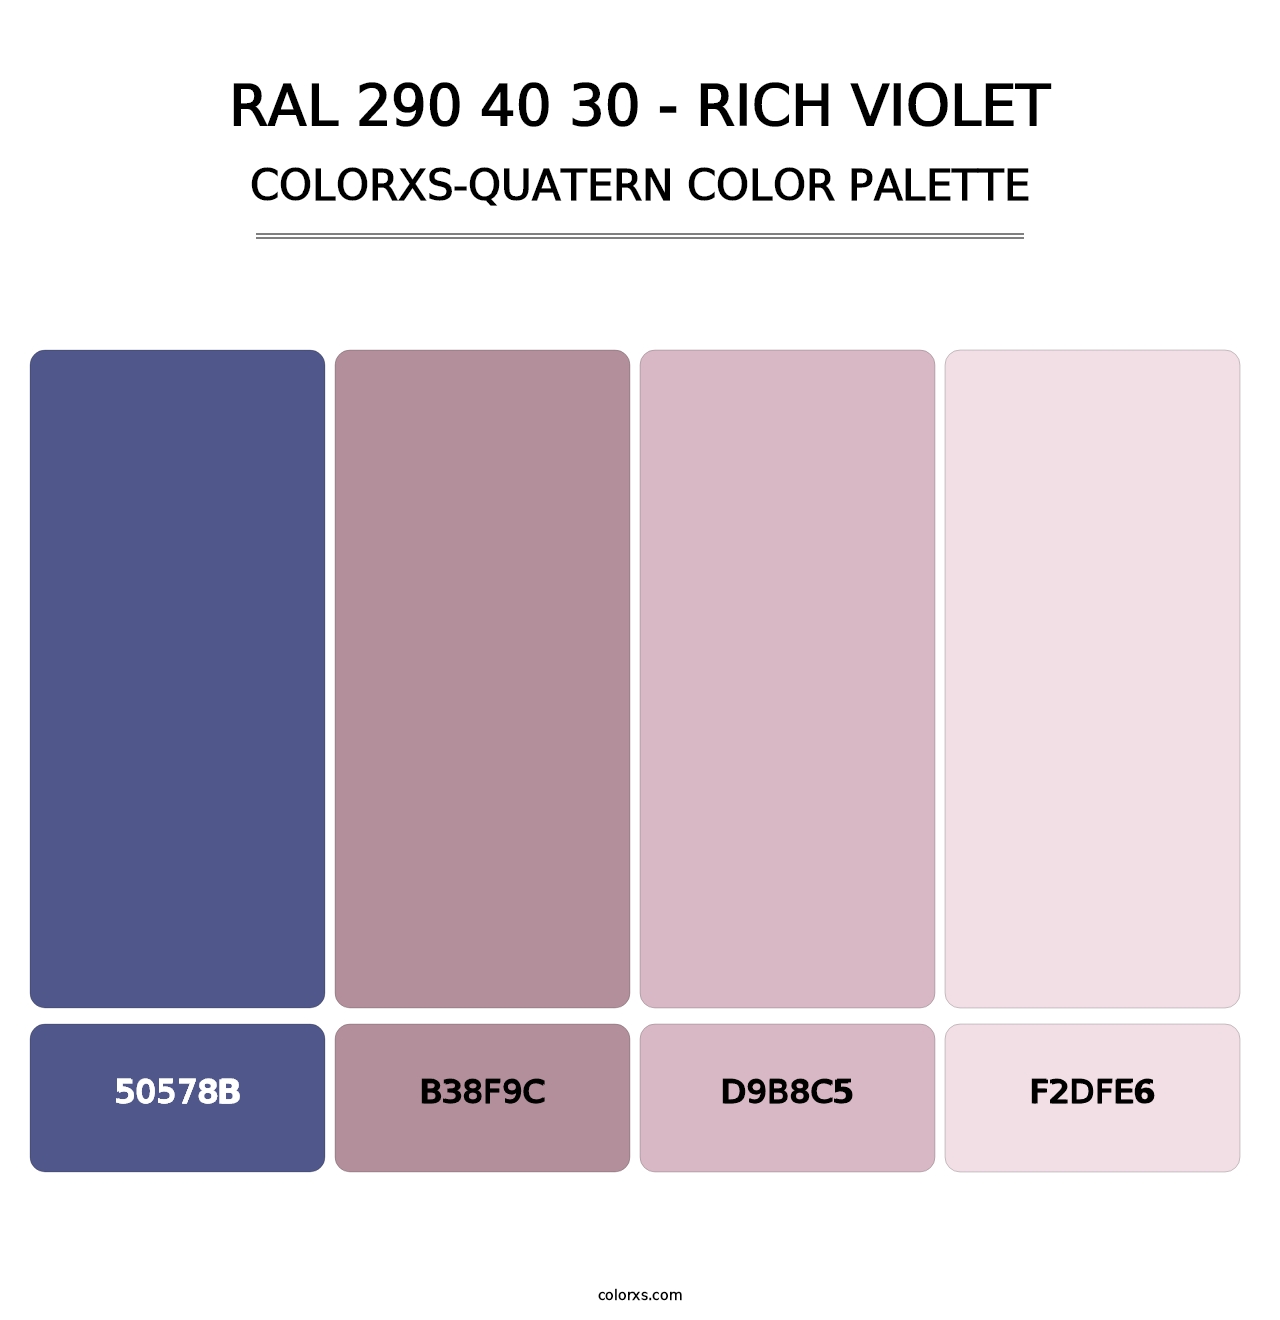 RAL 290 40 30 - Rich Violet - Colorxs Quatern Palette